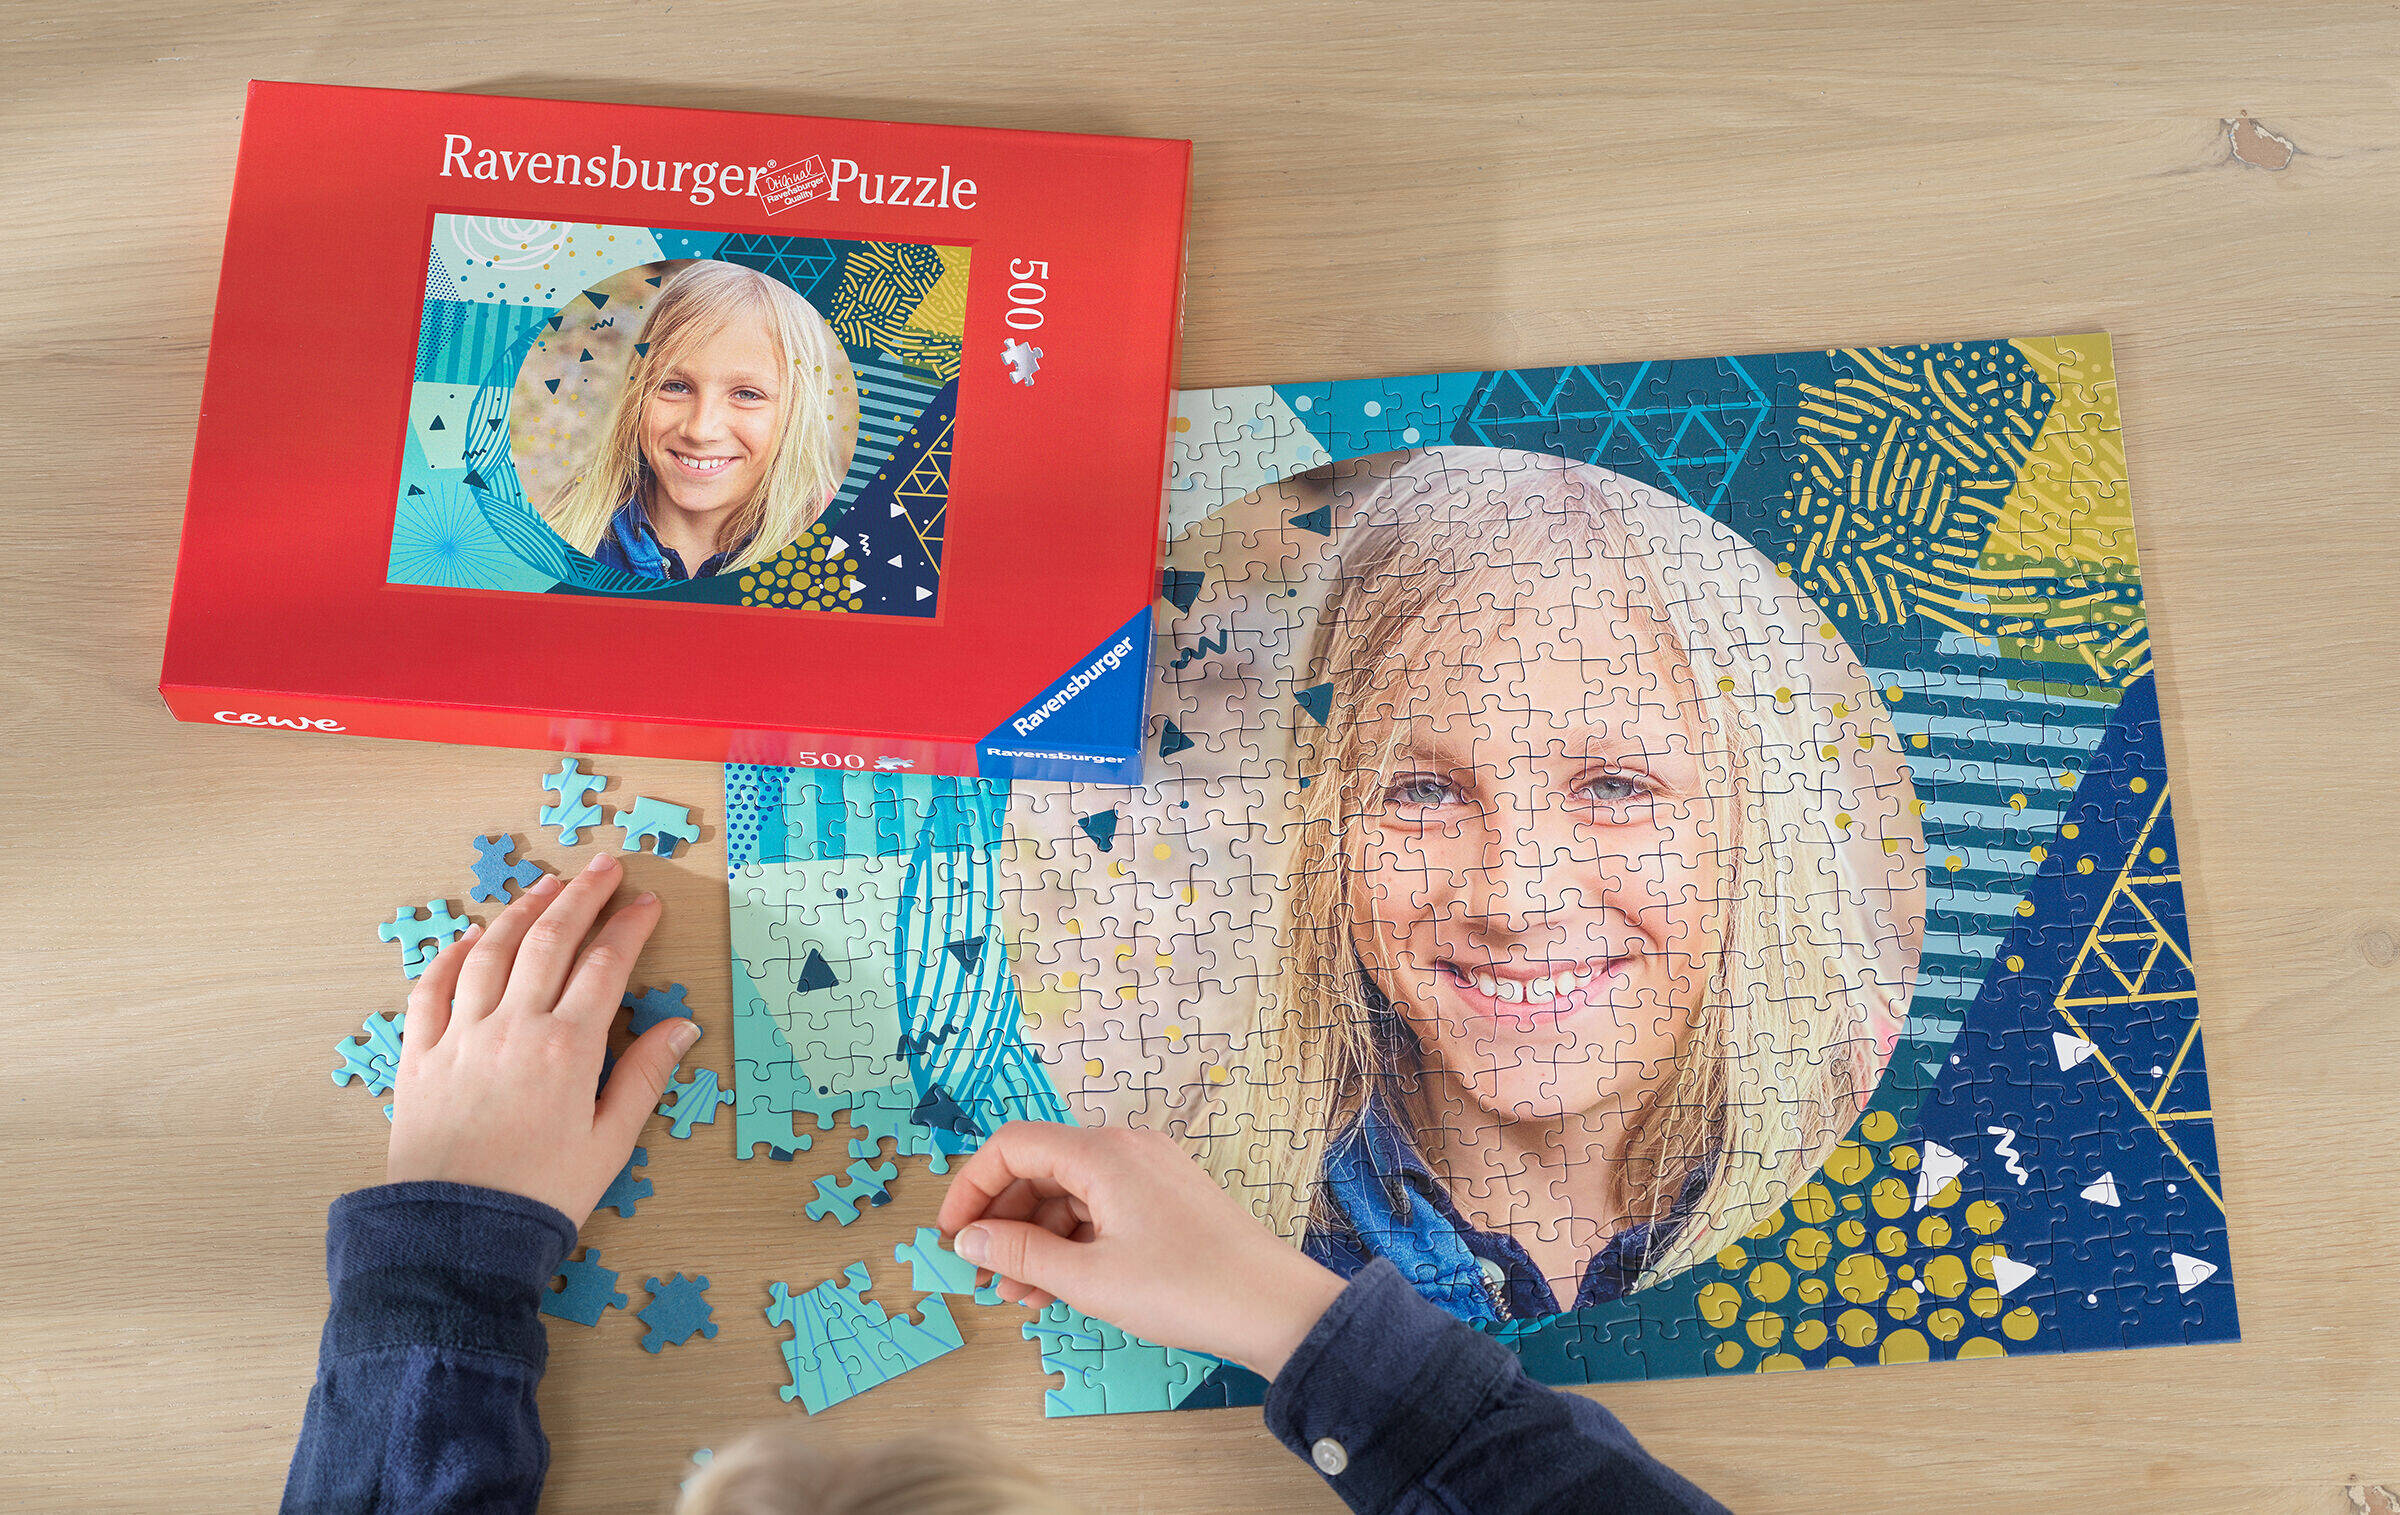 Fotopuzzle mit Foto von Kind in Kreisform. Der Hintergrund besteht aus verschiedenen abstrakten Formen in Grün- und Blautönen.